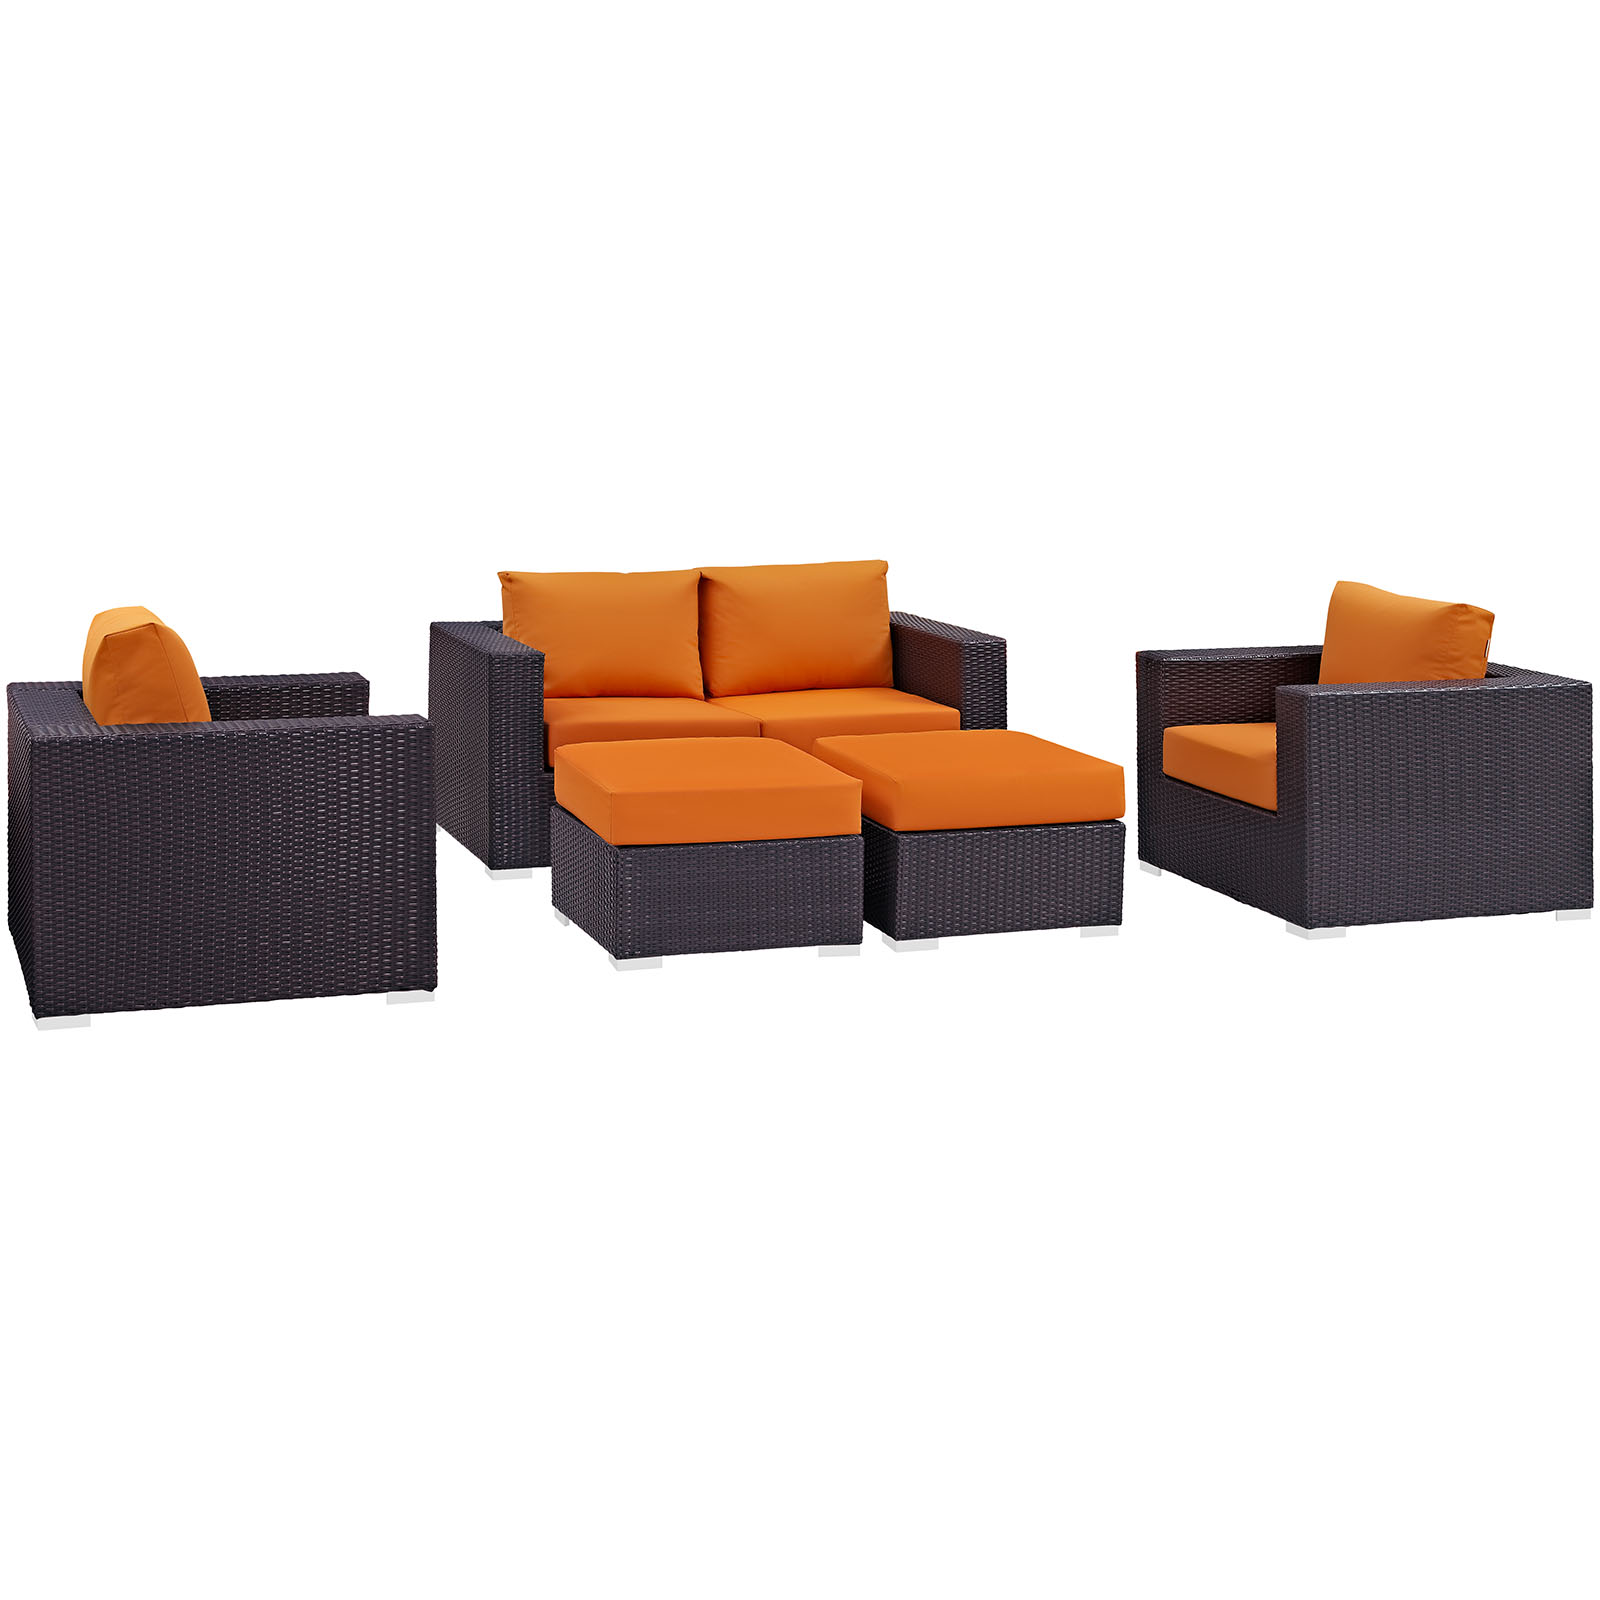 Modway Convene 5 Piece Outdoor Patio Sofa Set in Espresso Orange - image 2 of 7